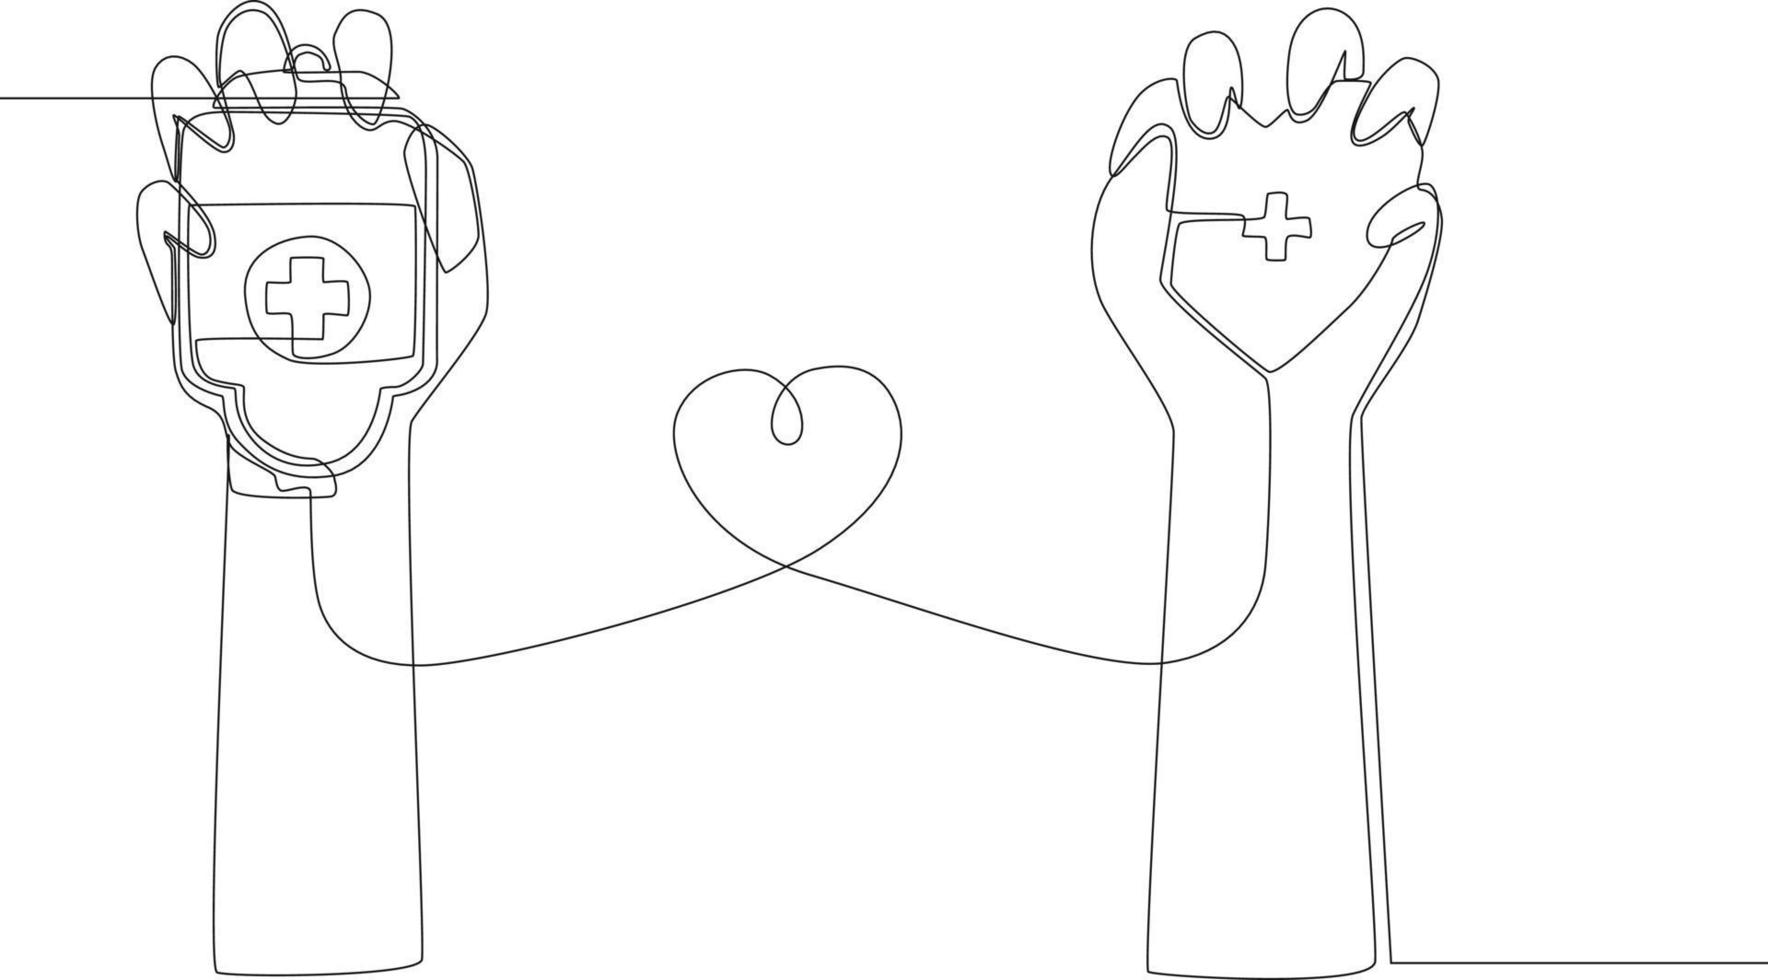 dibujo de una sola línea continua la mano derecha sostiene la bolsa de transfusión de sangre y la mano izquierda sostiene el corazón. ilustración de vector de diseño gráfico de dibujo de una línea.